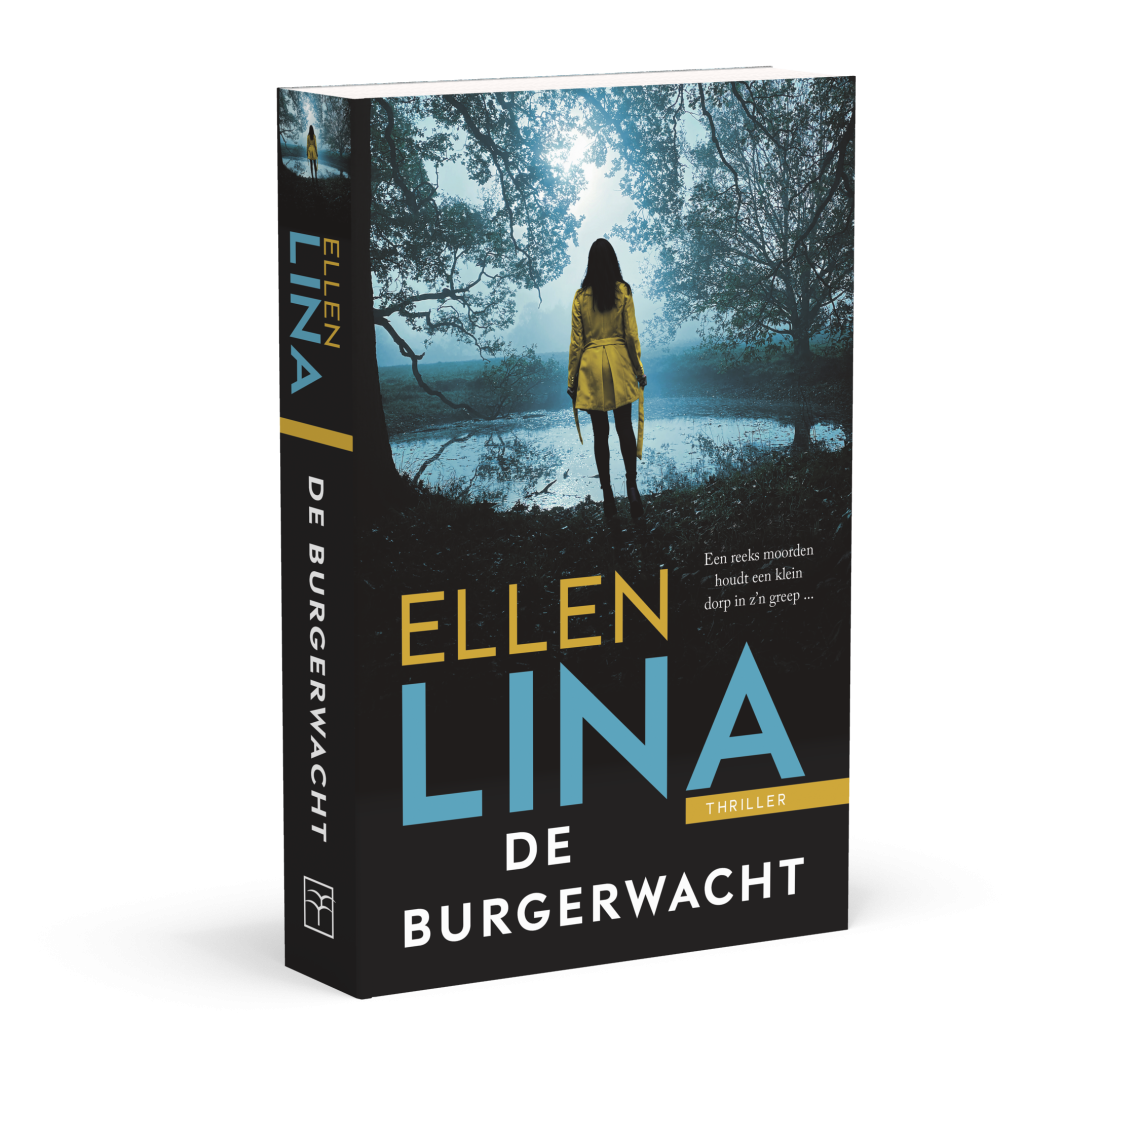 De burgerwacht - Ellen Lina